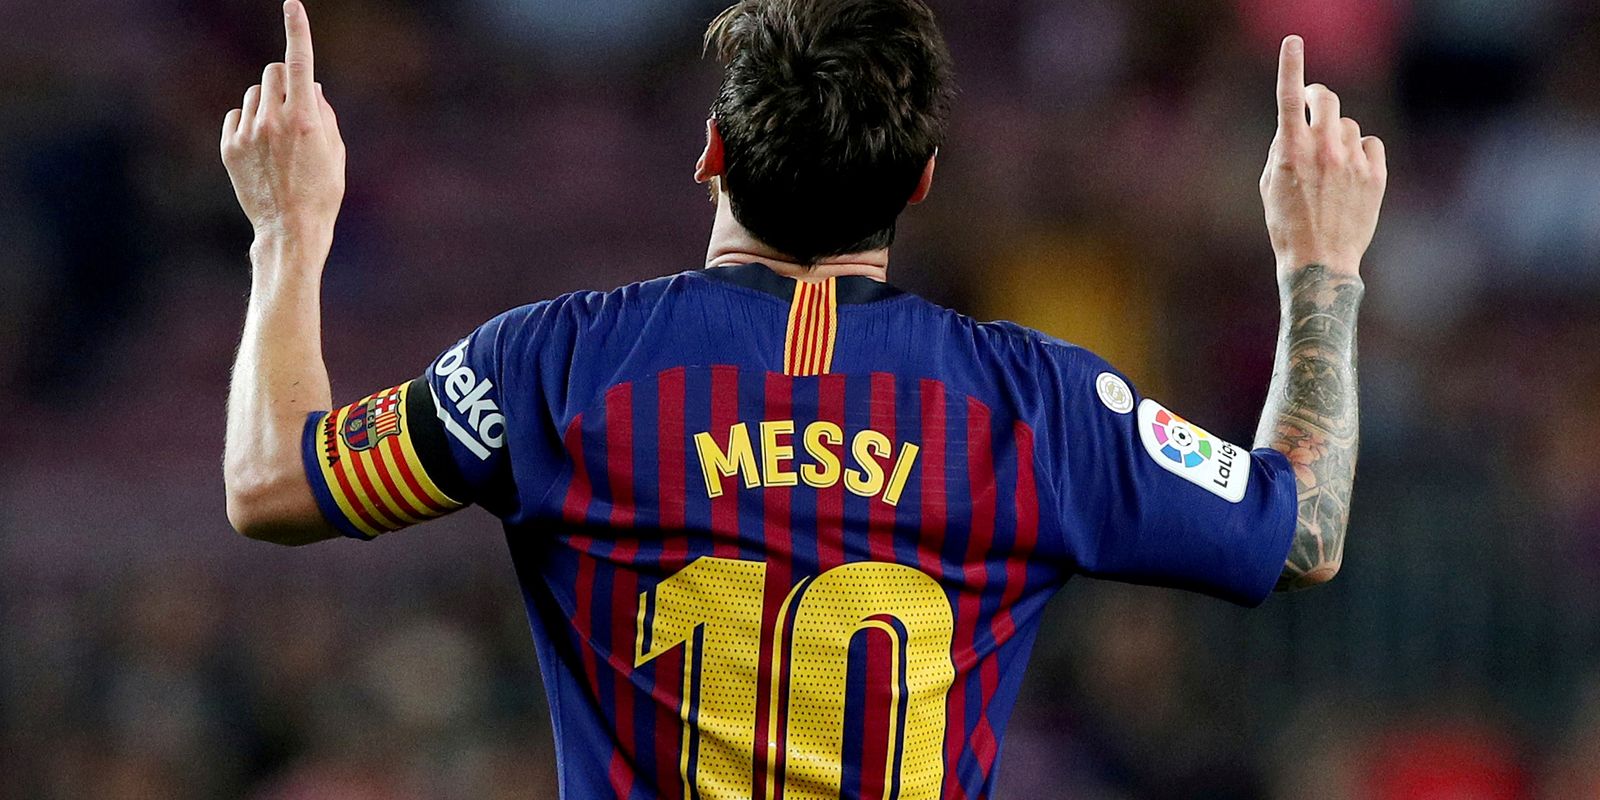 Saiba quem é o jogador de futebol mais rico do mundo — e não é o Messi